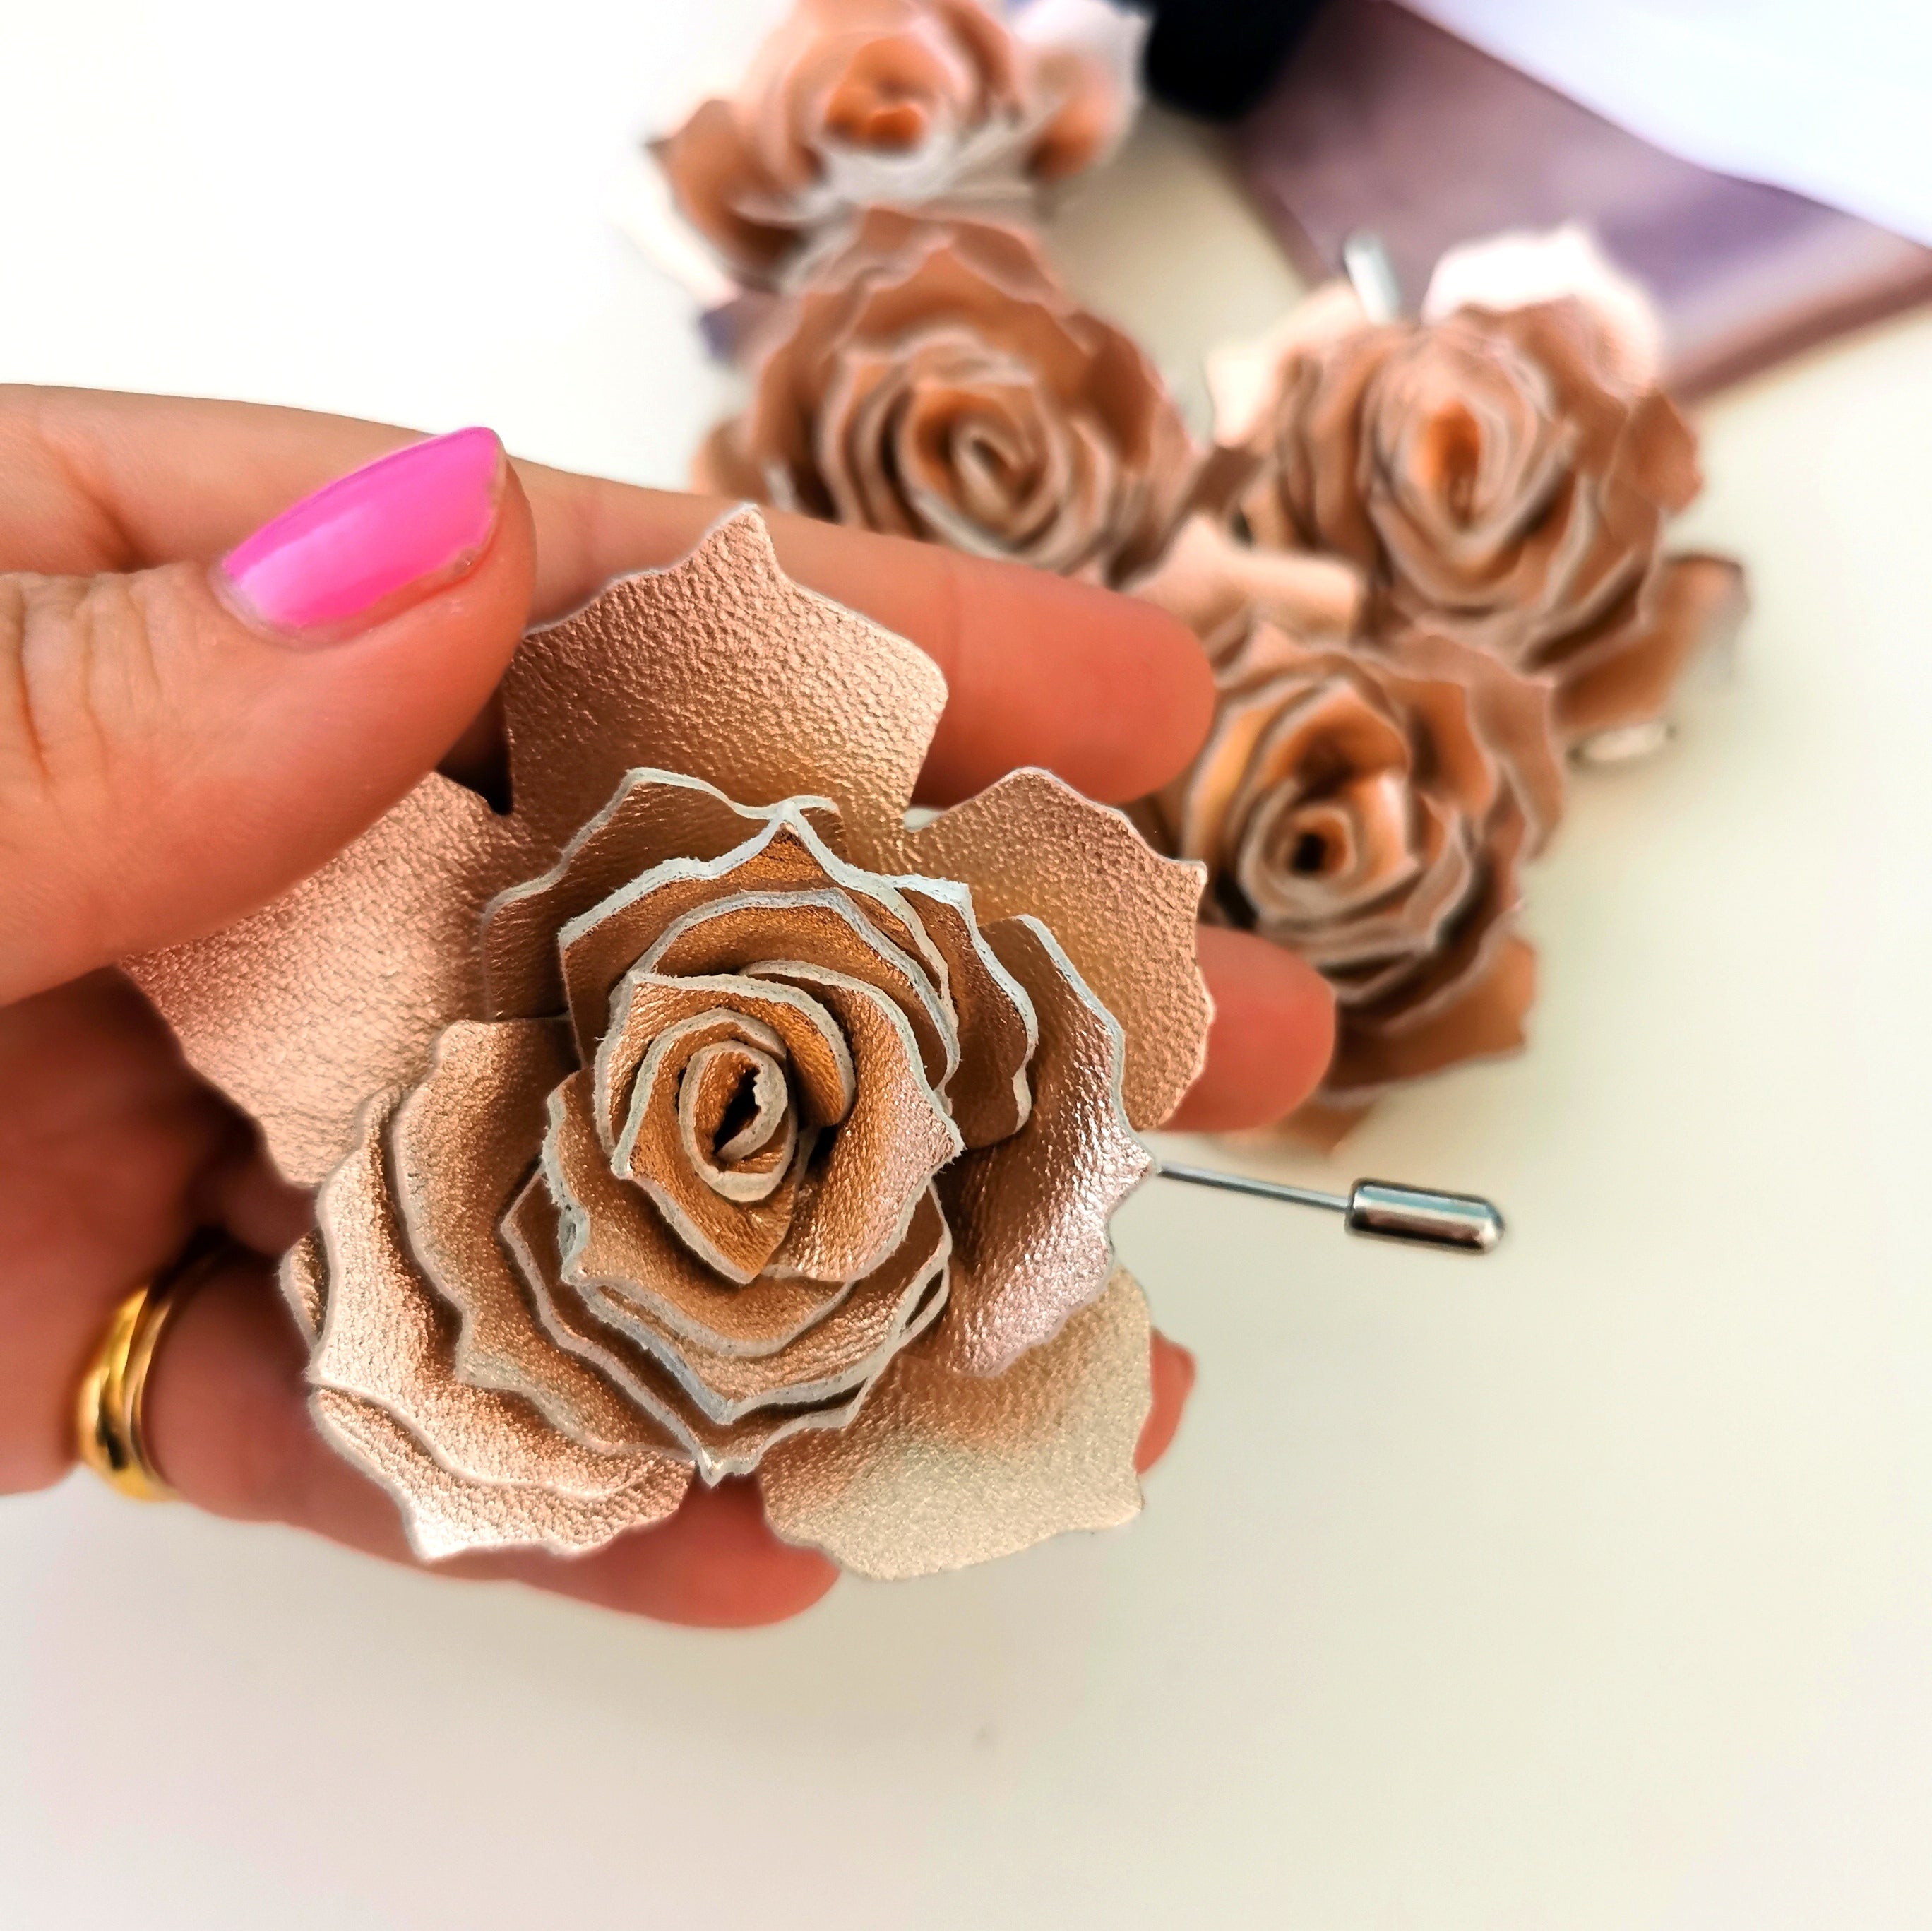 Rose Flower Lapel Pins, Flower Pins